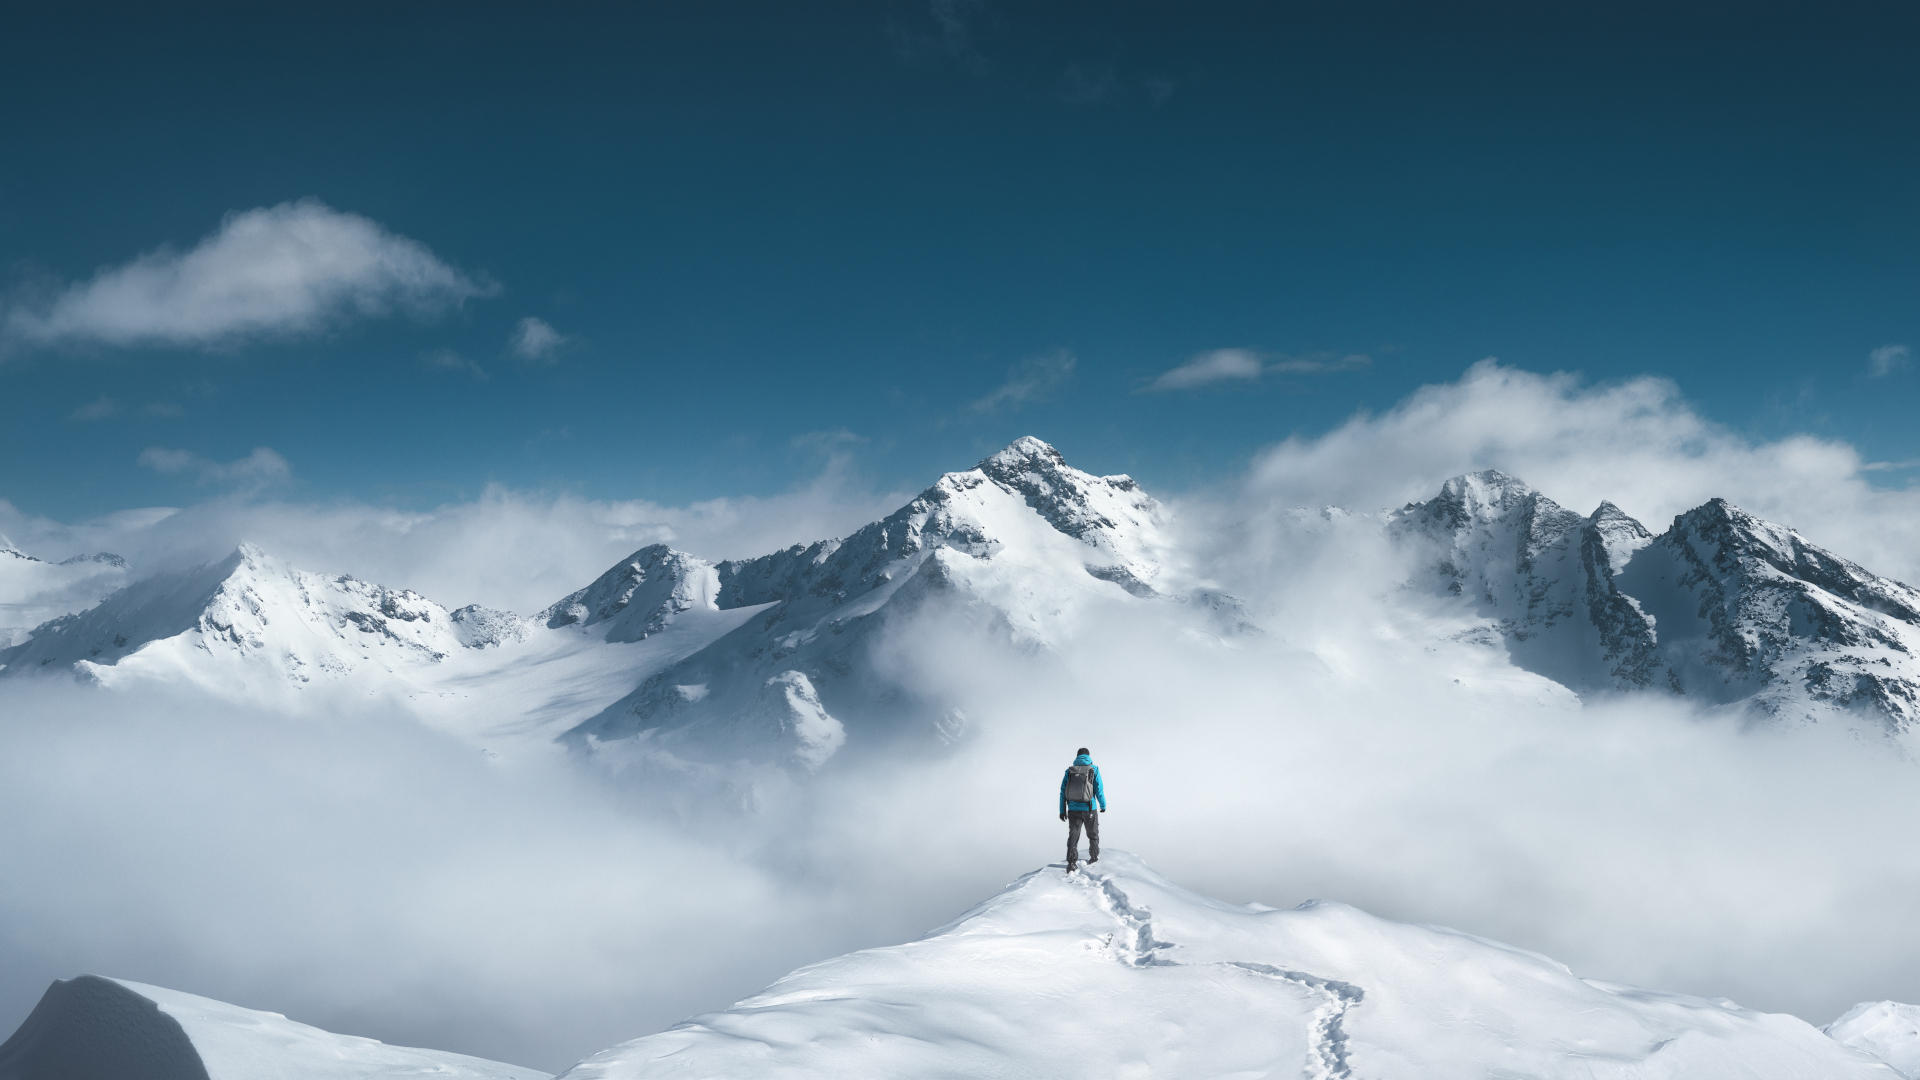 Un excursionista parado en la cima de un pico montañoso cubierto de nieve.jpg